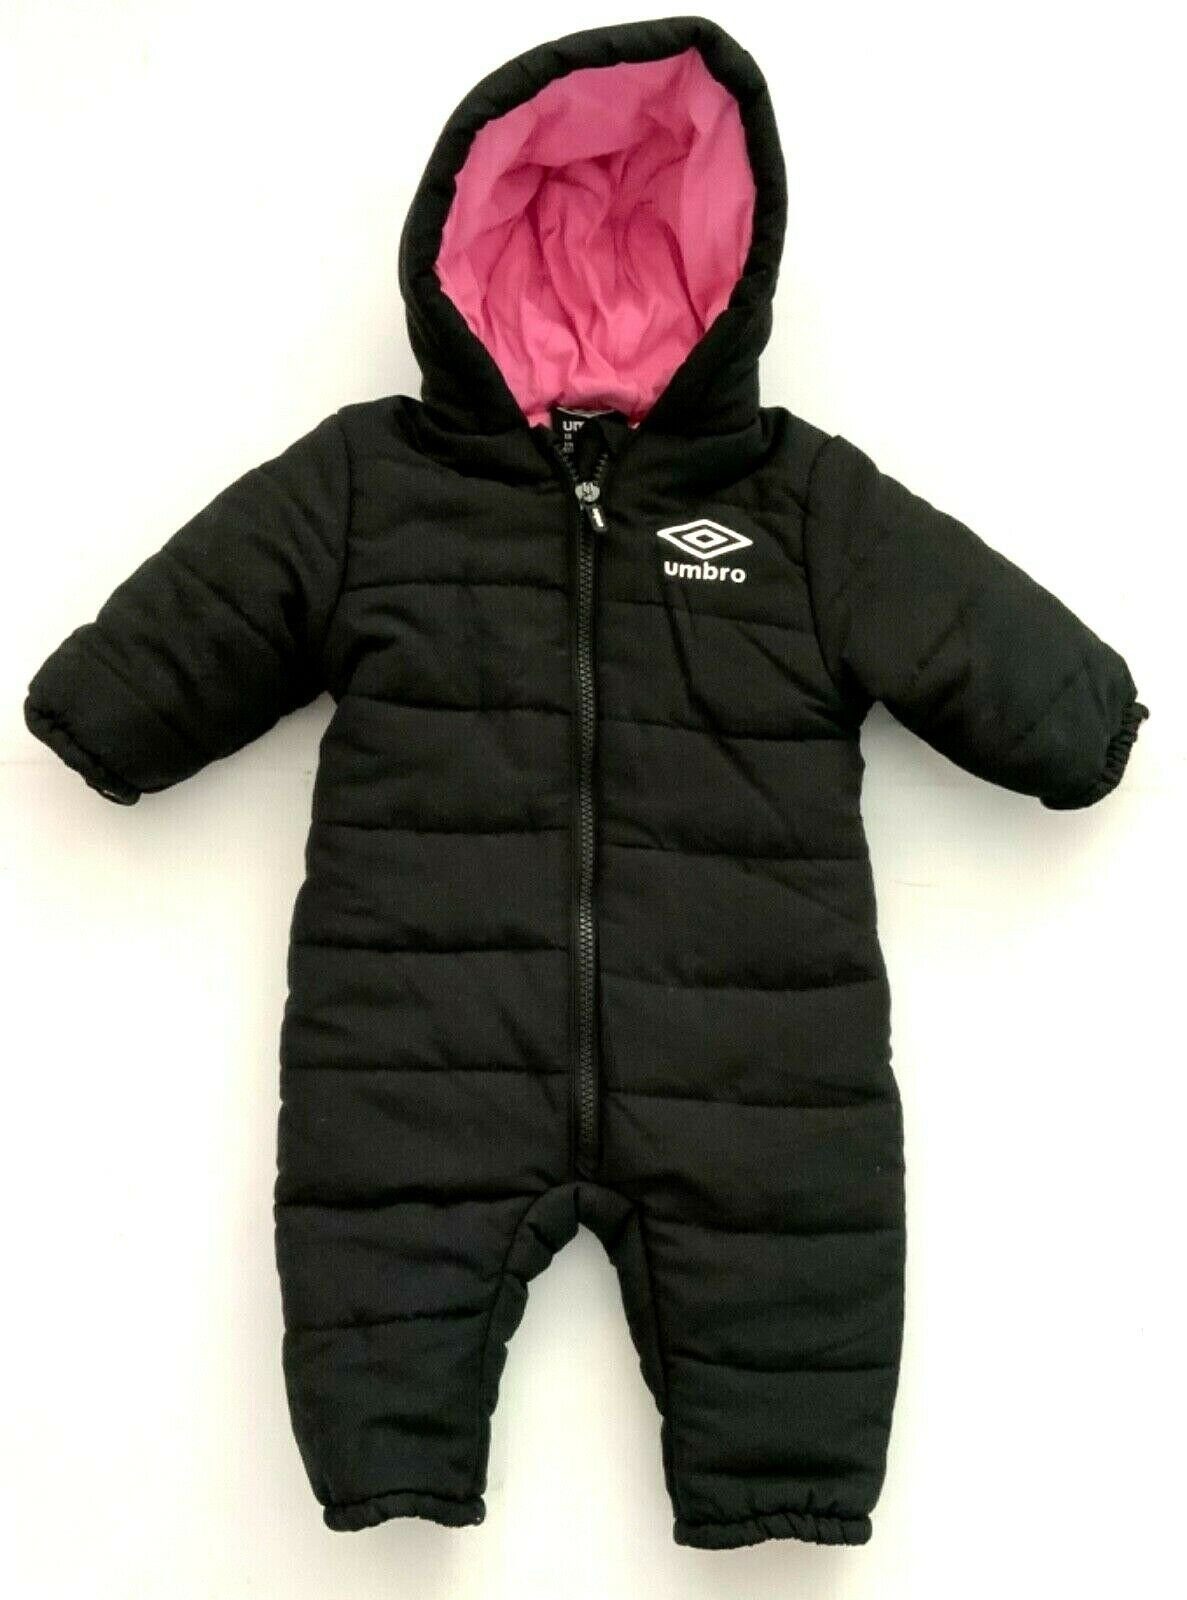 Umbro Schneeoverall »Umbro Baby Schneeanzug, Umbro Baby Mädchen Overall,  Schneeanzug, schwarz« online kaufen | OTTO